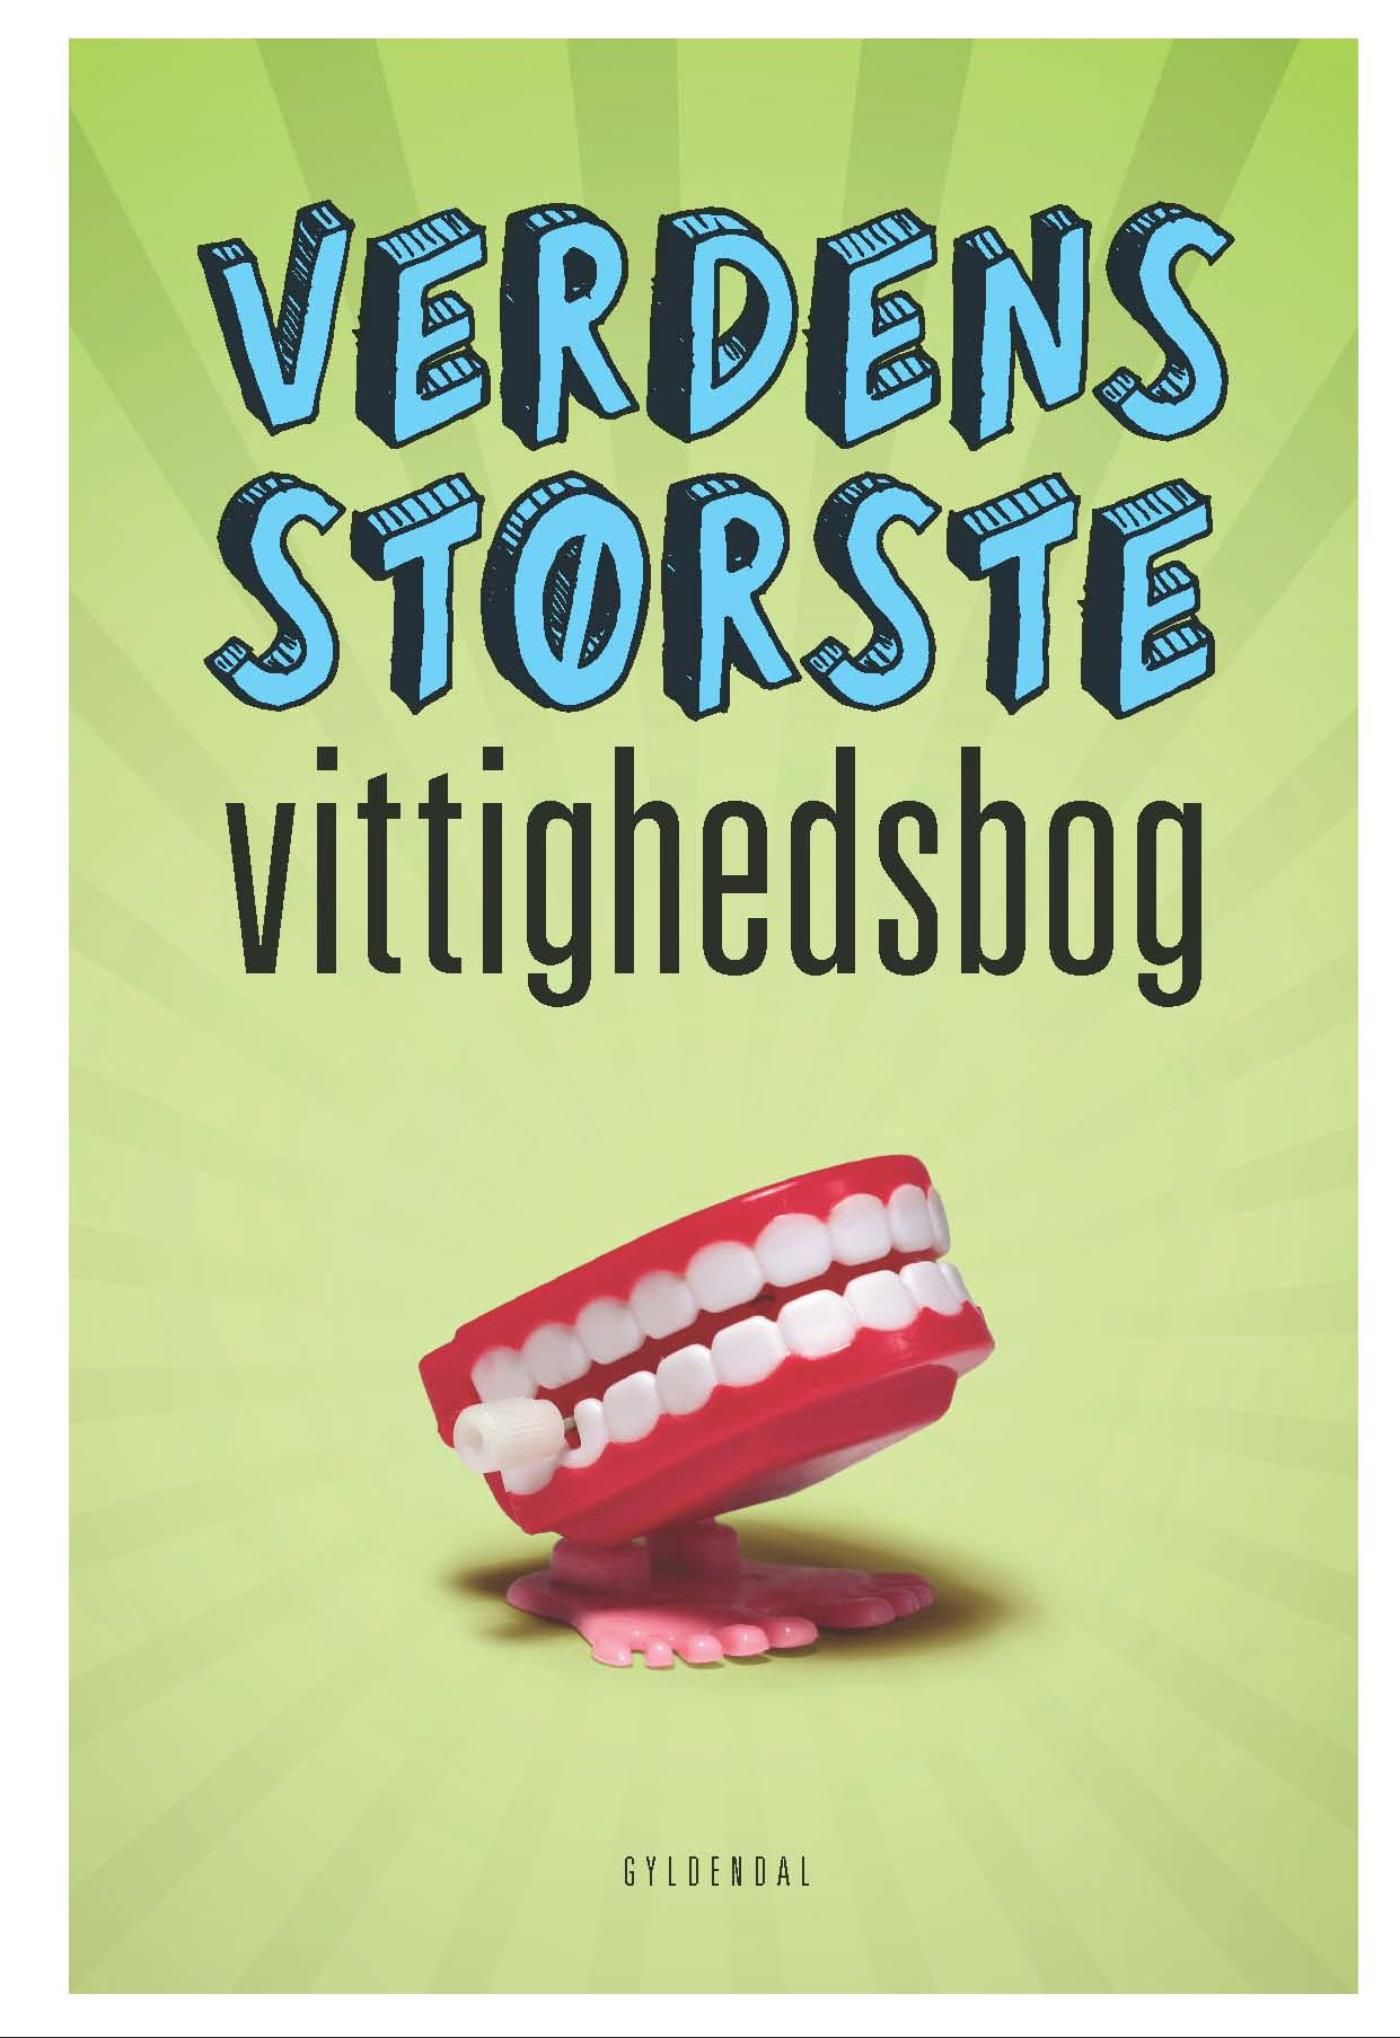 Verdens største vittighedsbog, e-bok av Sten Wijkman Kjærsgaard